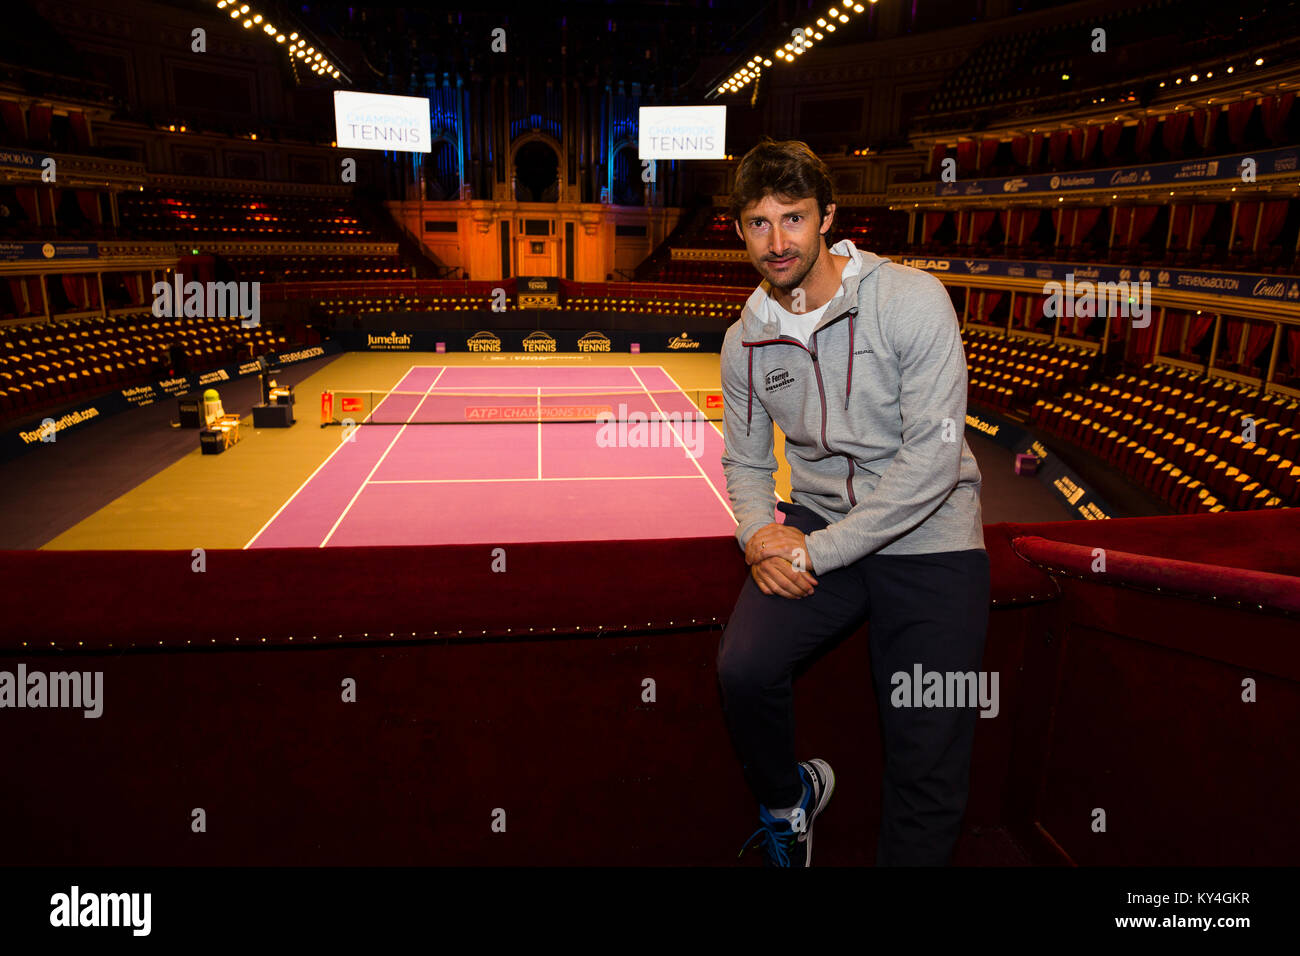 London, Großbritannien. Juan Carlos Ferrero wirft bei einem Fotoshooting der Start der Champions Tennis Turnier in der Royal Albert Hall zu markieren. Stockfoto